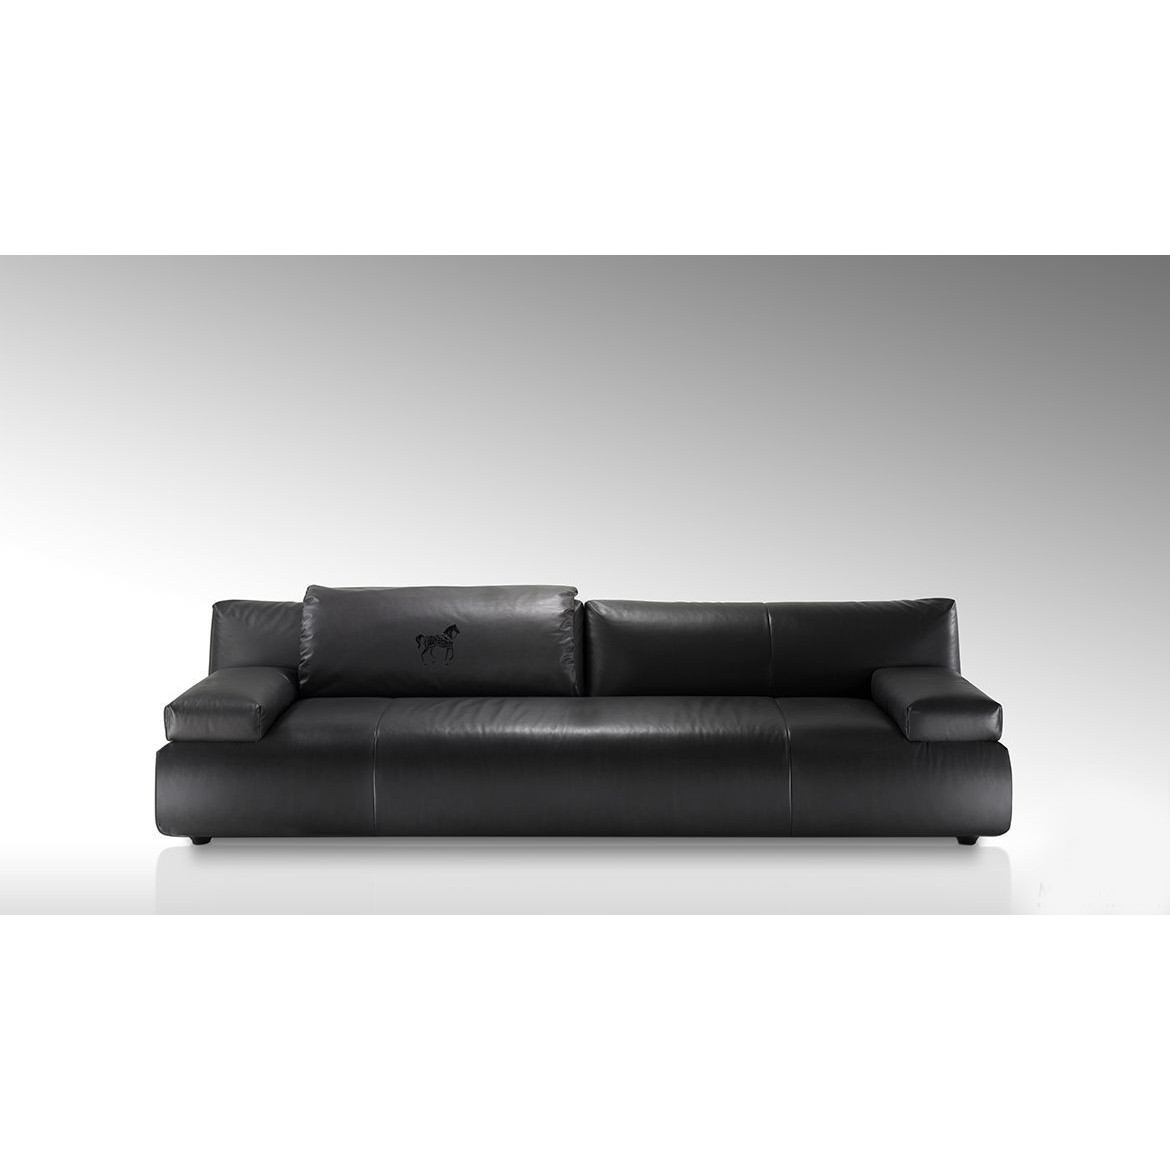 Мебель на заказ / Диван, стиль хай-тек, дизайн Fendi Casa, модель Agadir Sofa